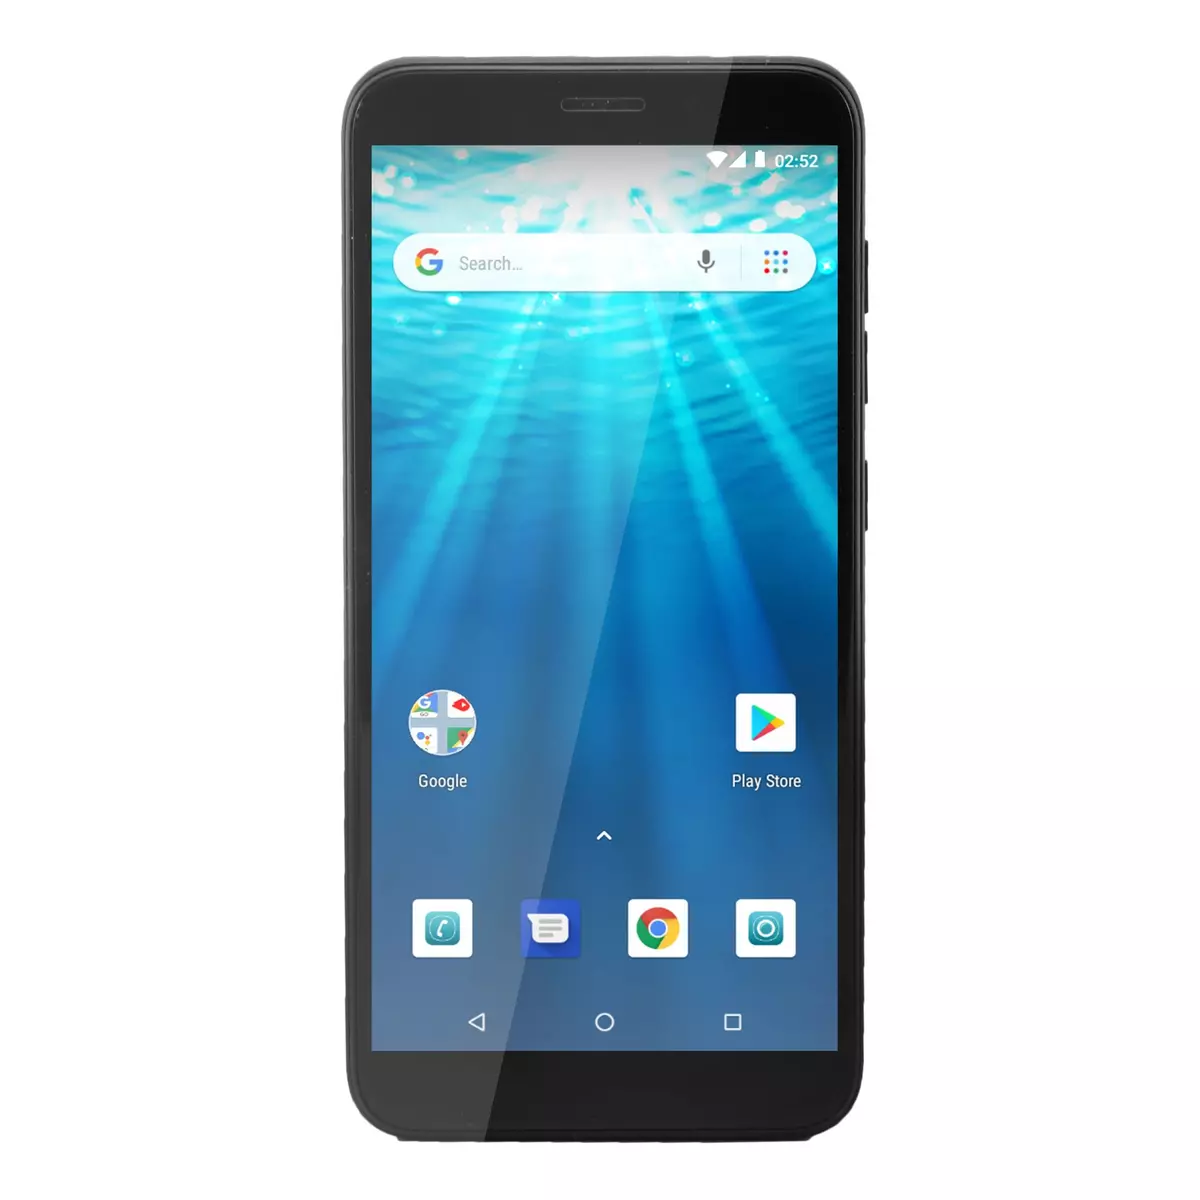 QILIVE Smartphone - Q10S53IN4G - 16Go - 5.3 pouces - Noir - Double SIM - 4G